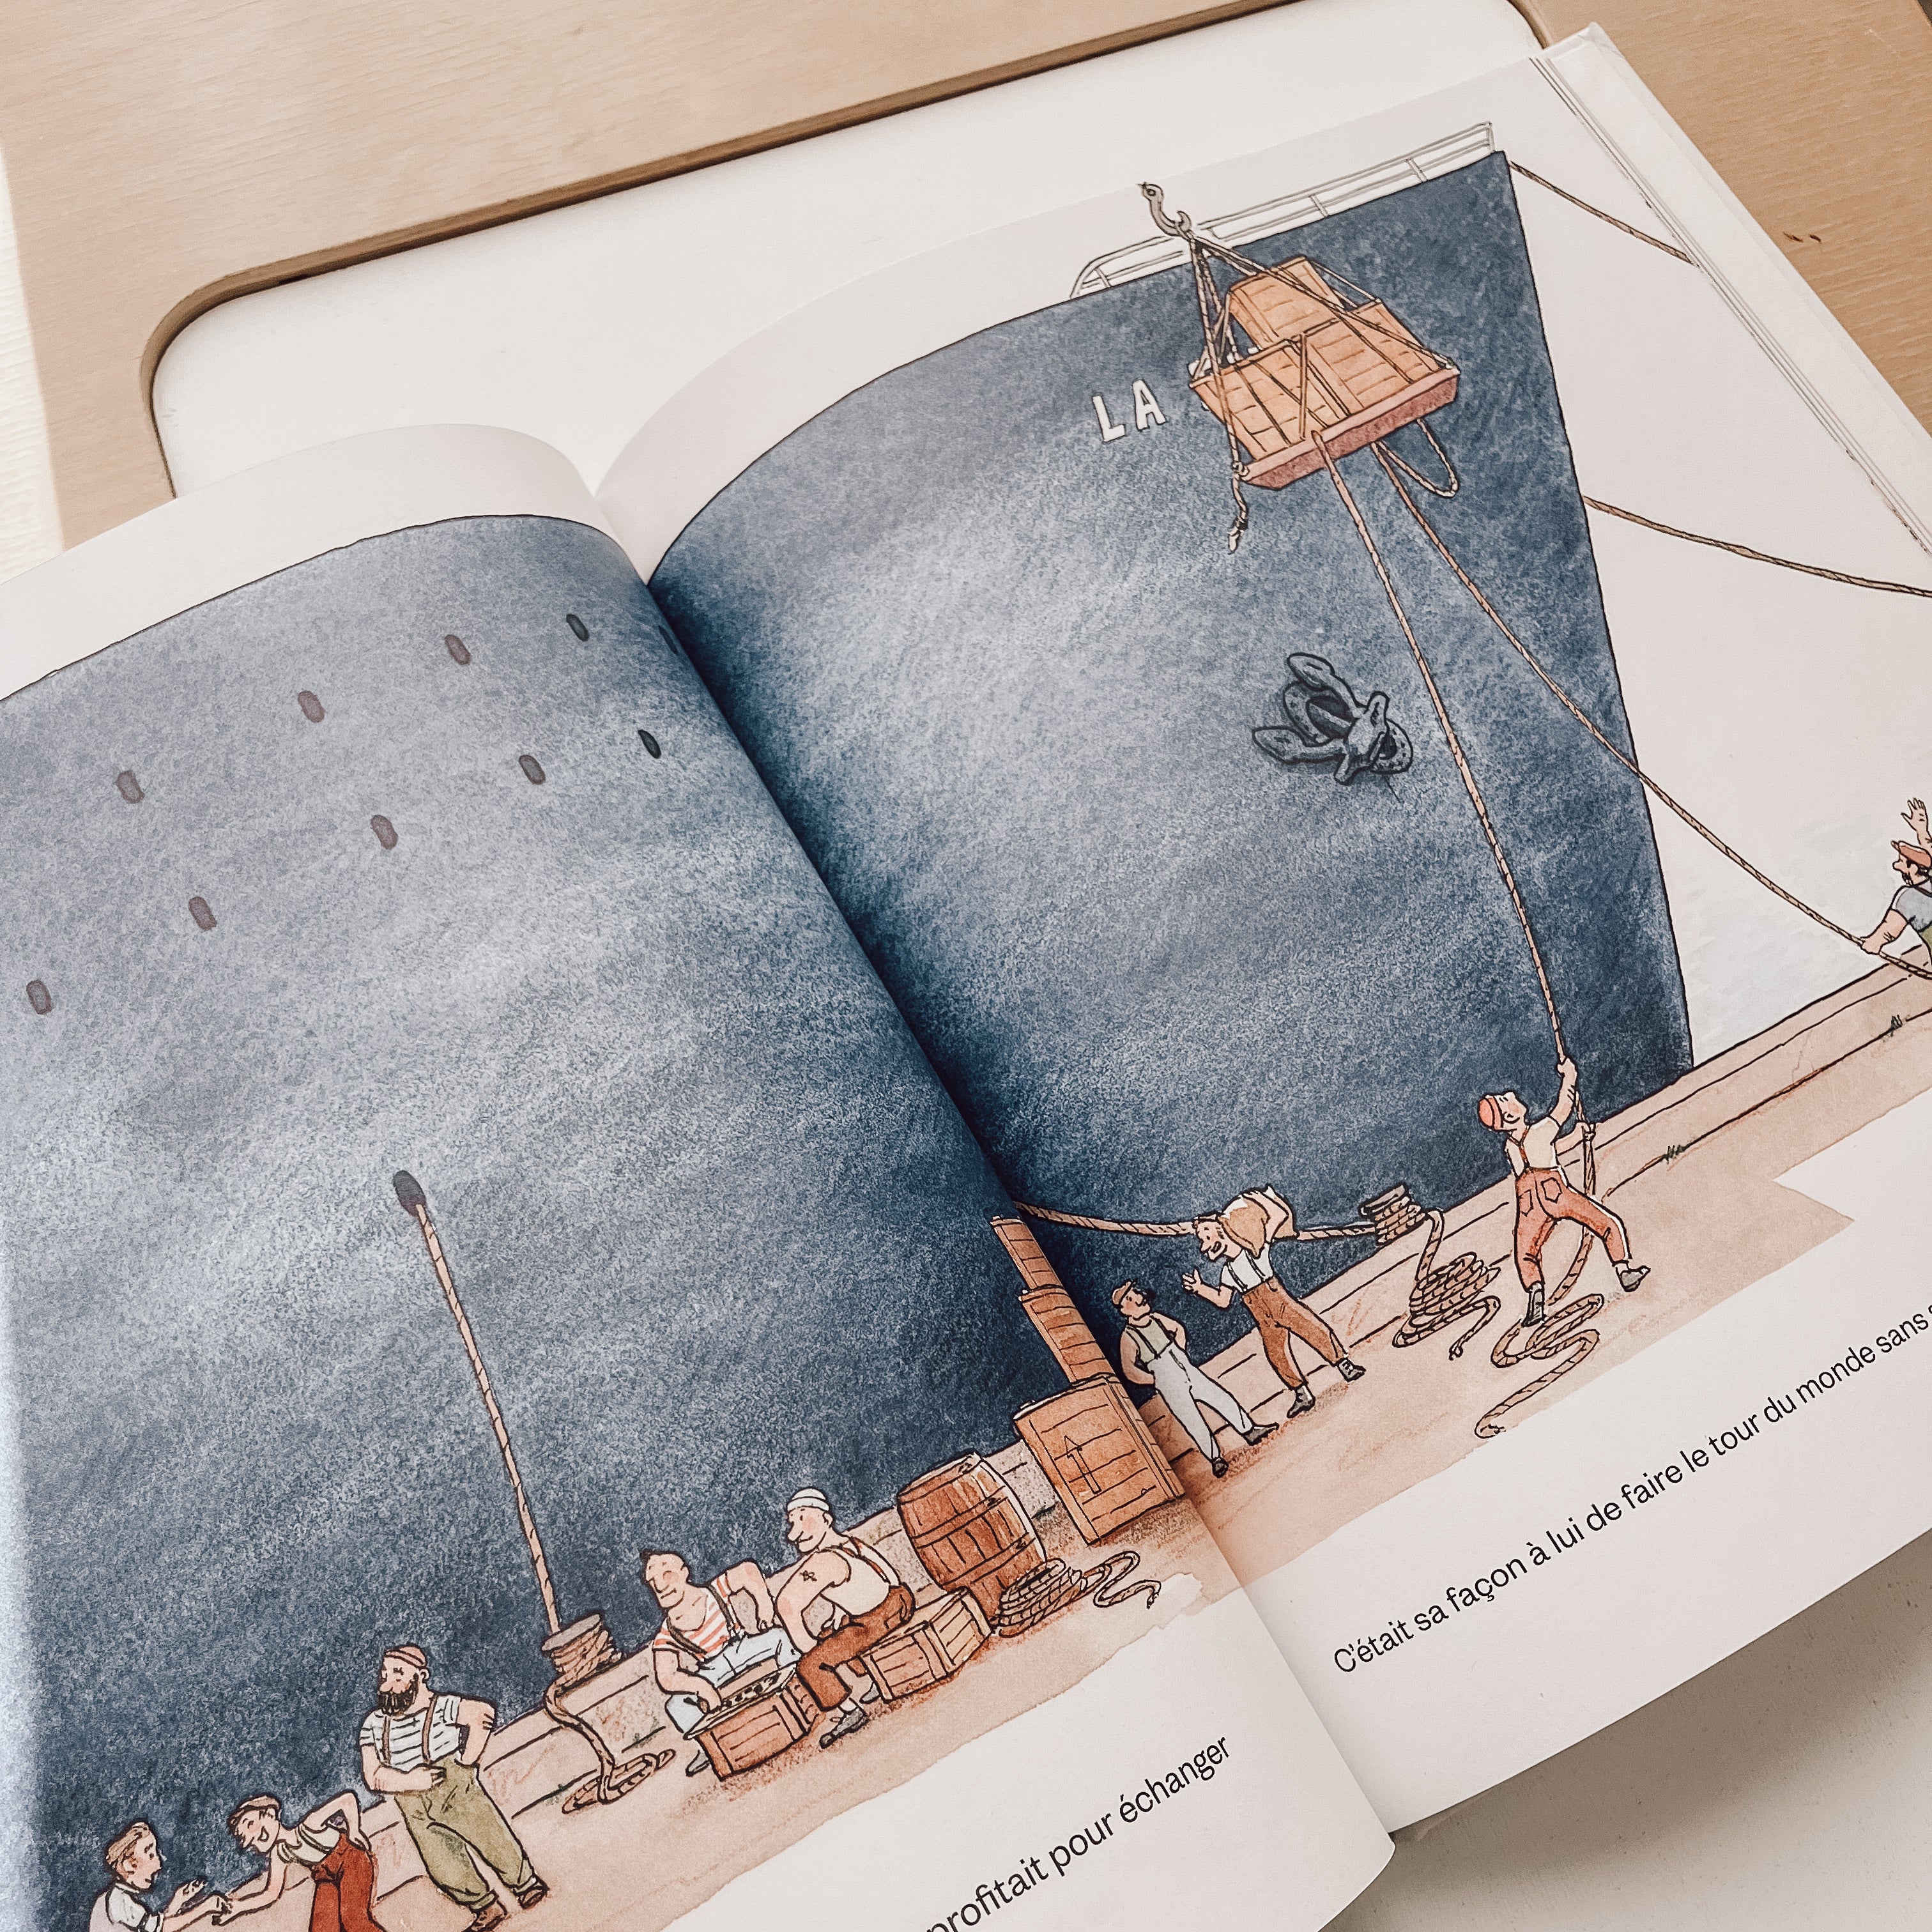 Storybook - La course de petits bateaux